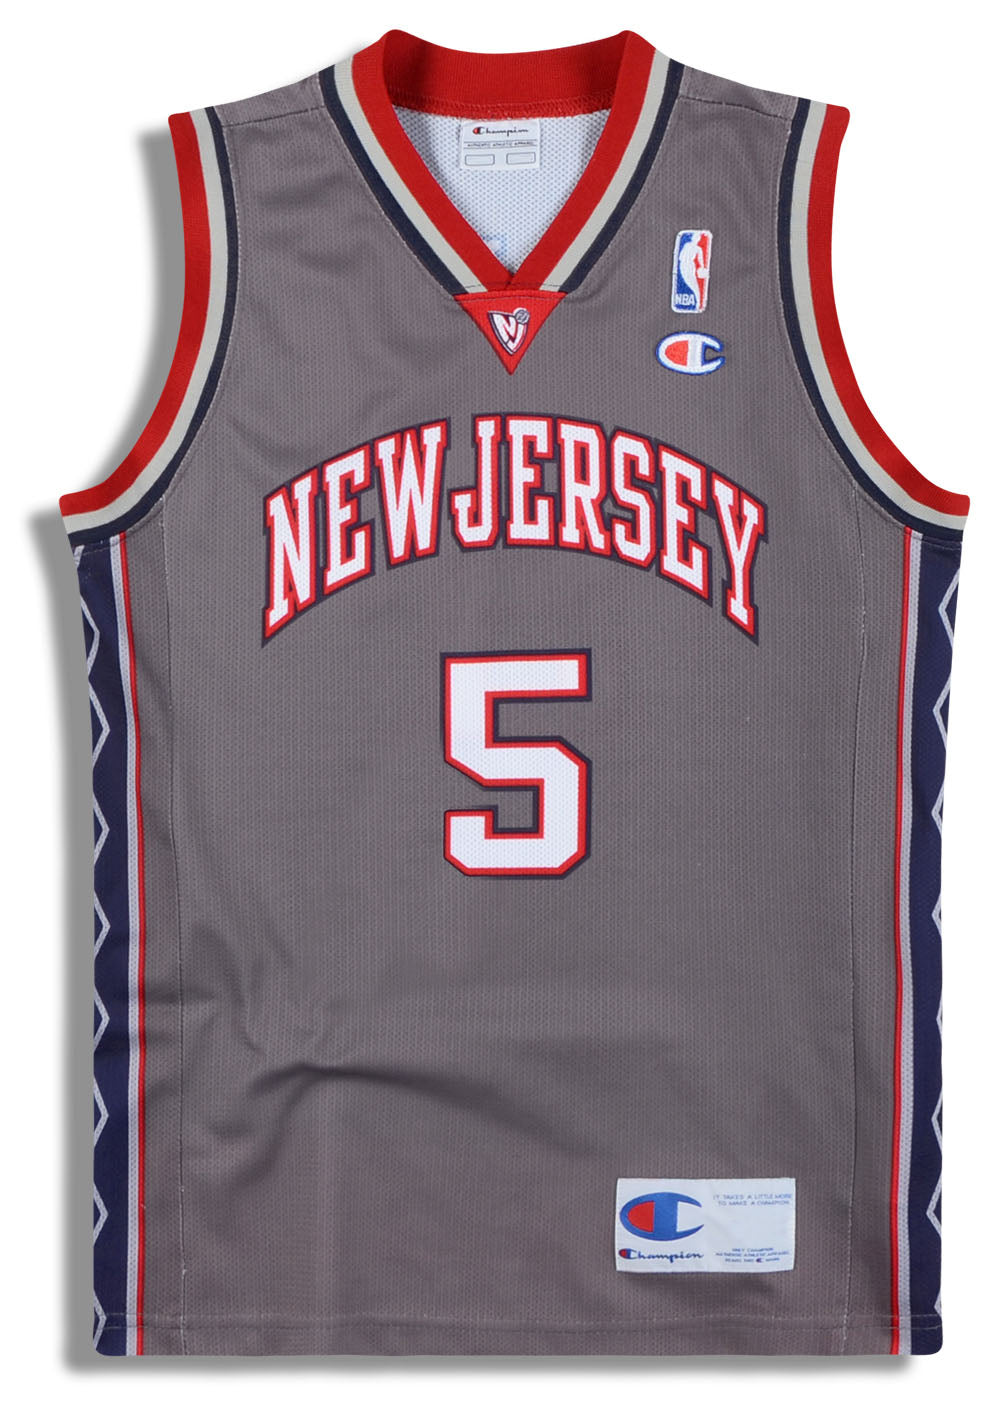 LEGO Jason Kidd Minifigure #5 New Jersey Nets NBA CMF Retired Lot nba002  3563